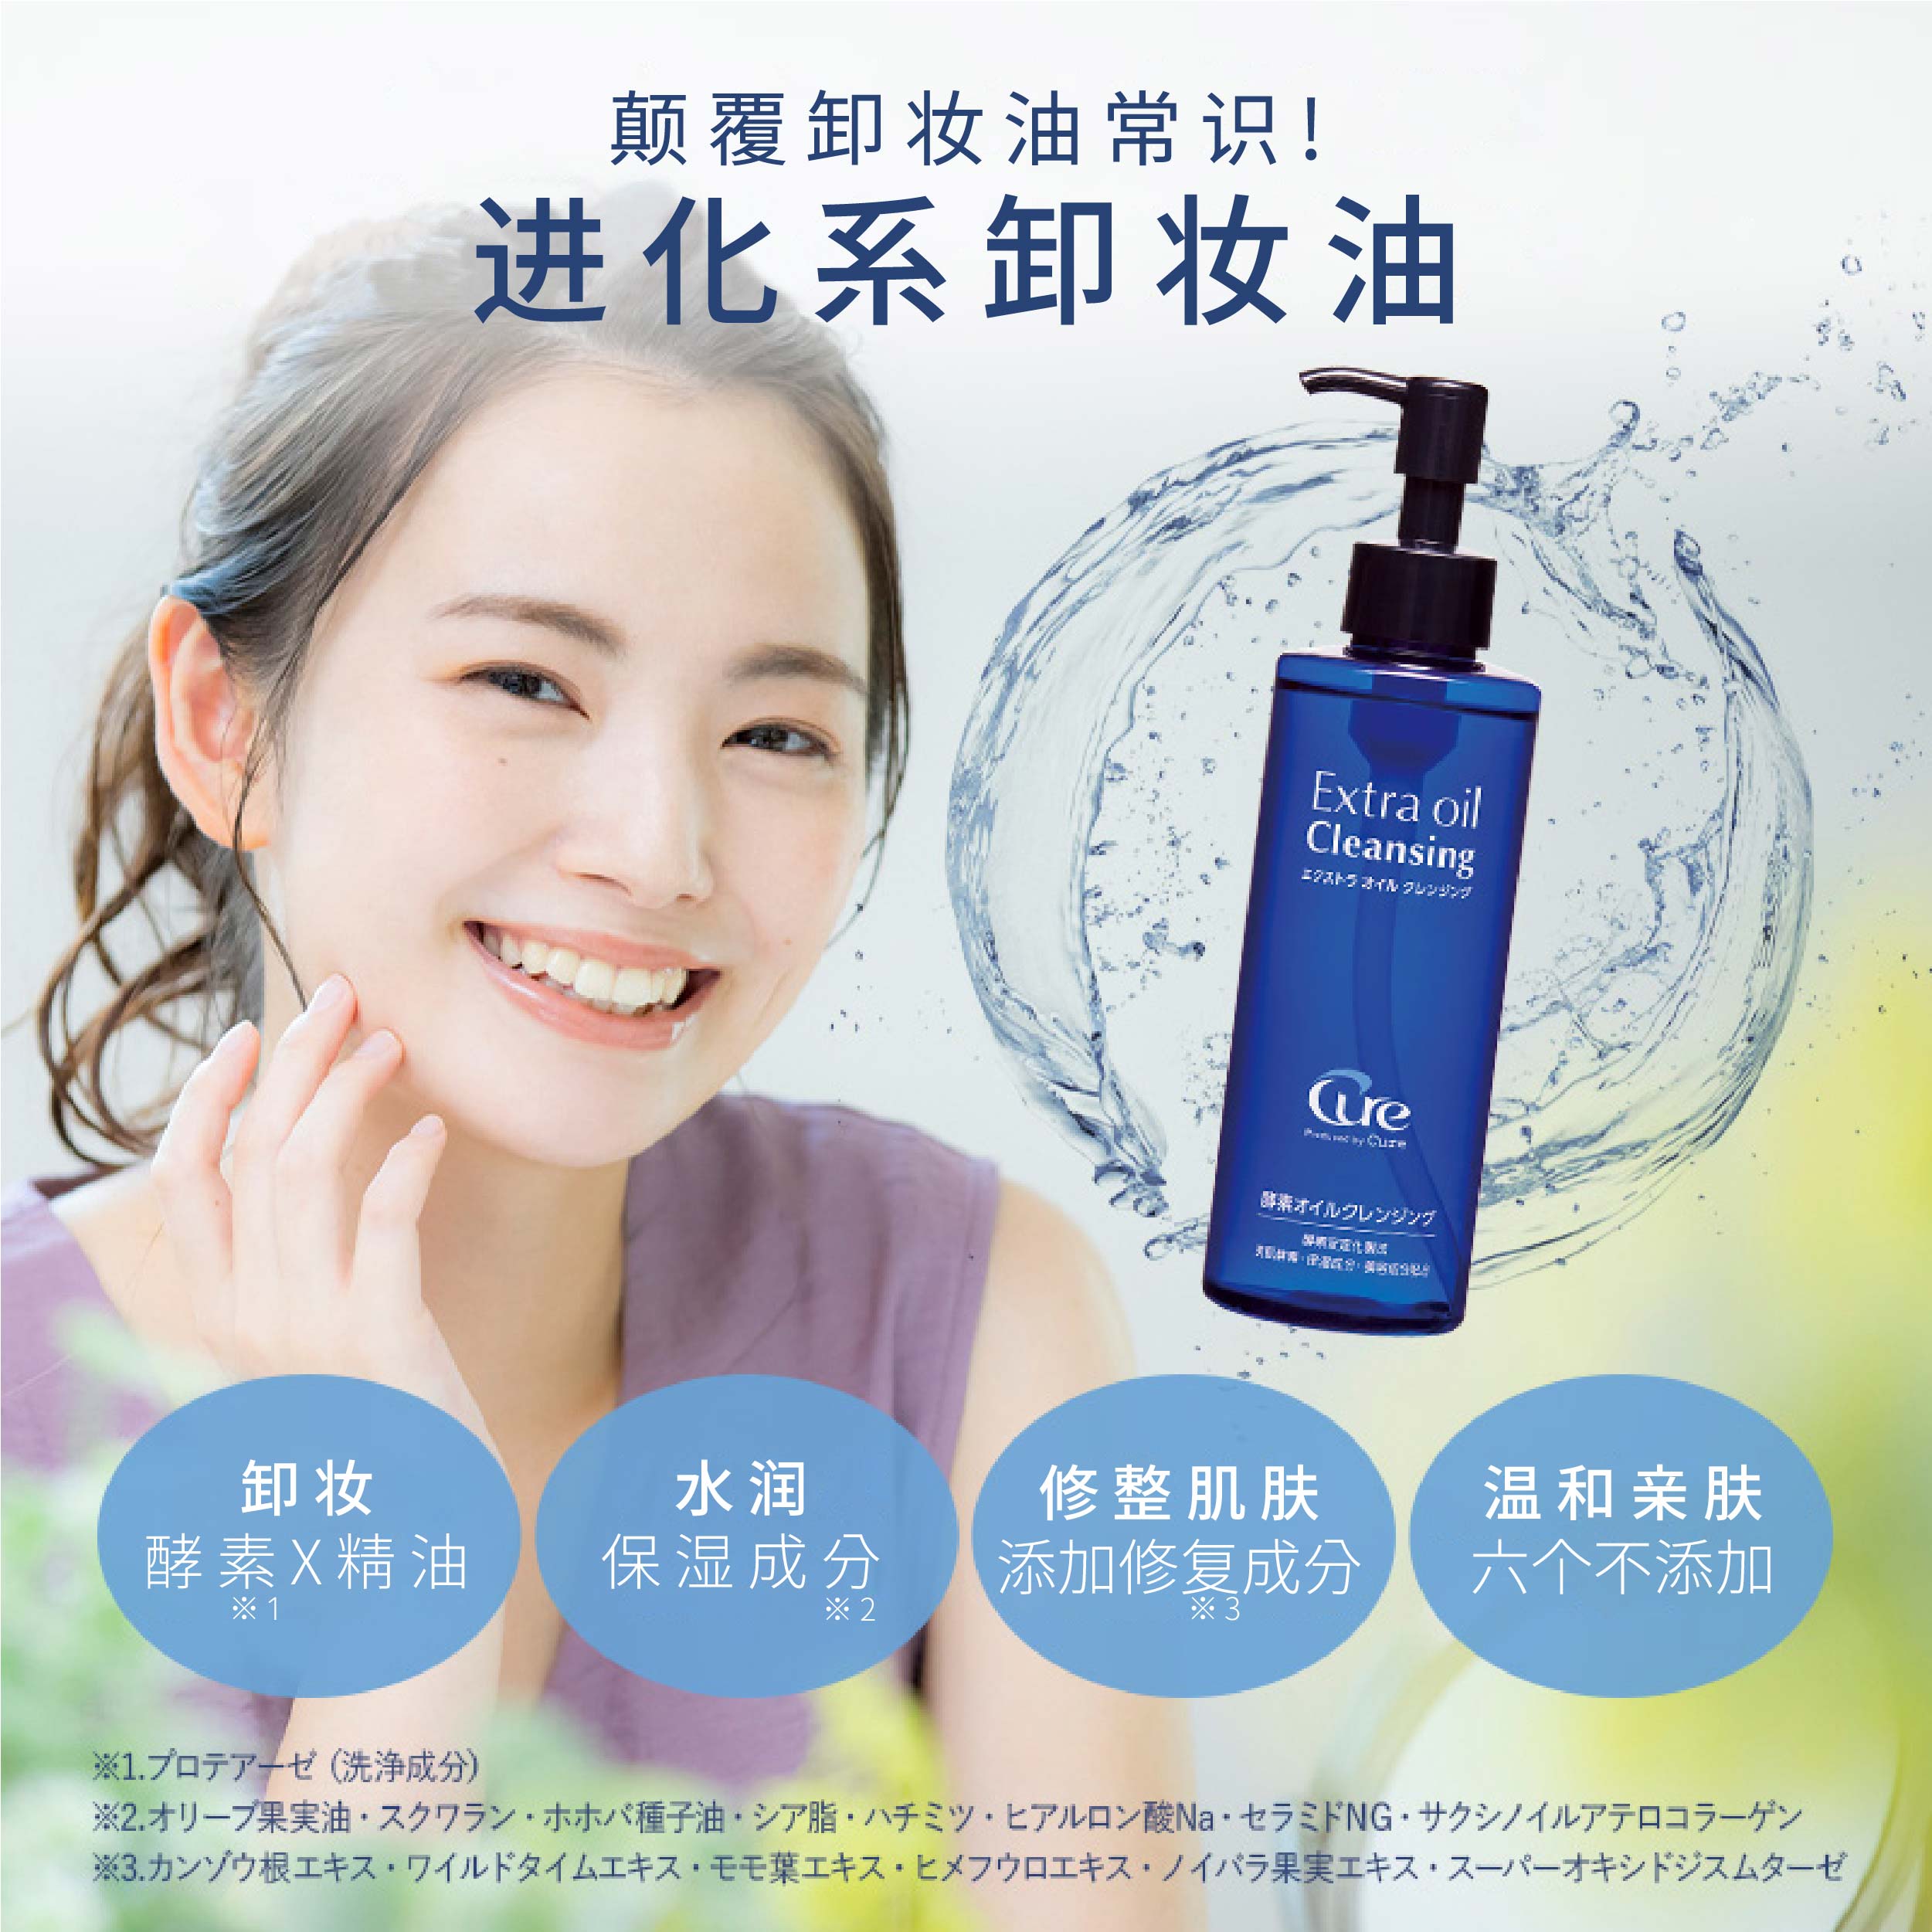 Cure 日本cure官方正品深层清洁眼唇脸部卸妆油水感清爽温和敏感肌可用 59元